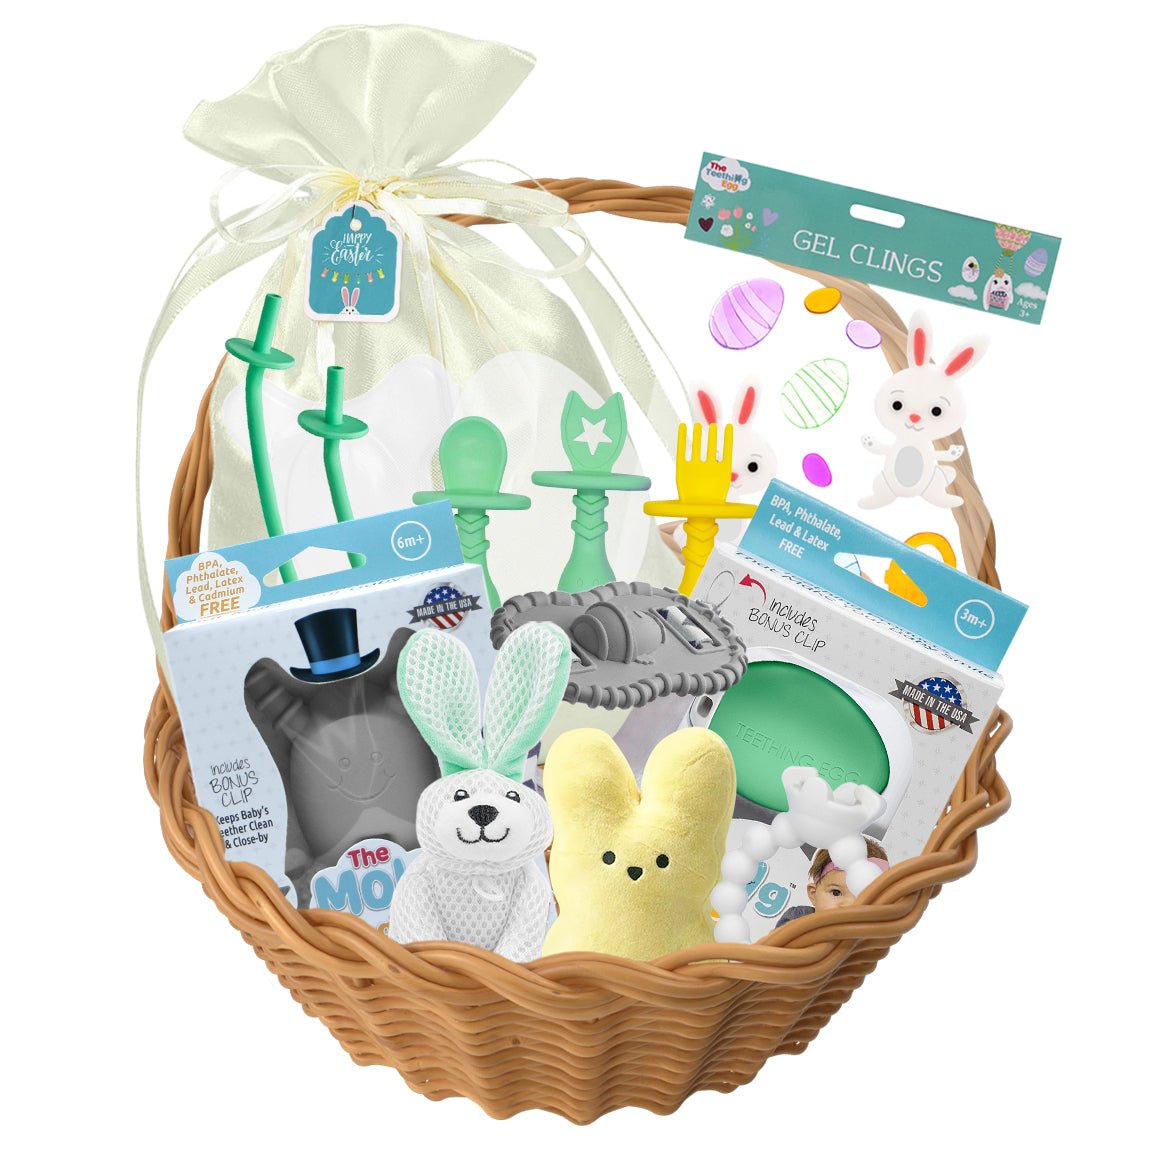 Bopsy Bunny Ultimate Easter Gift Set